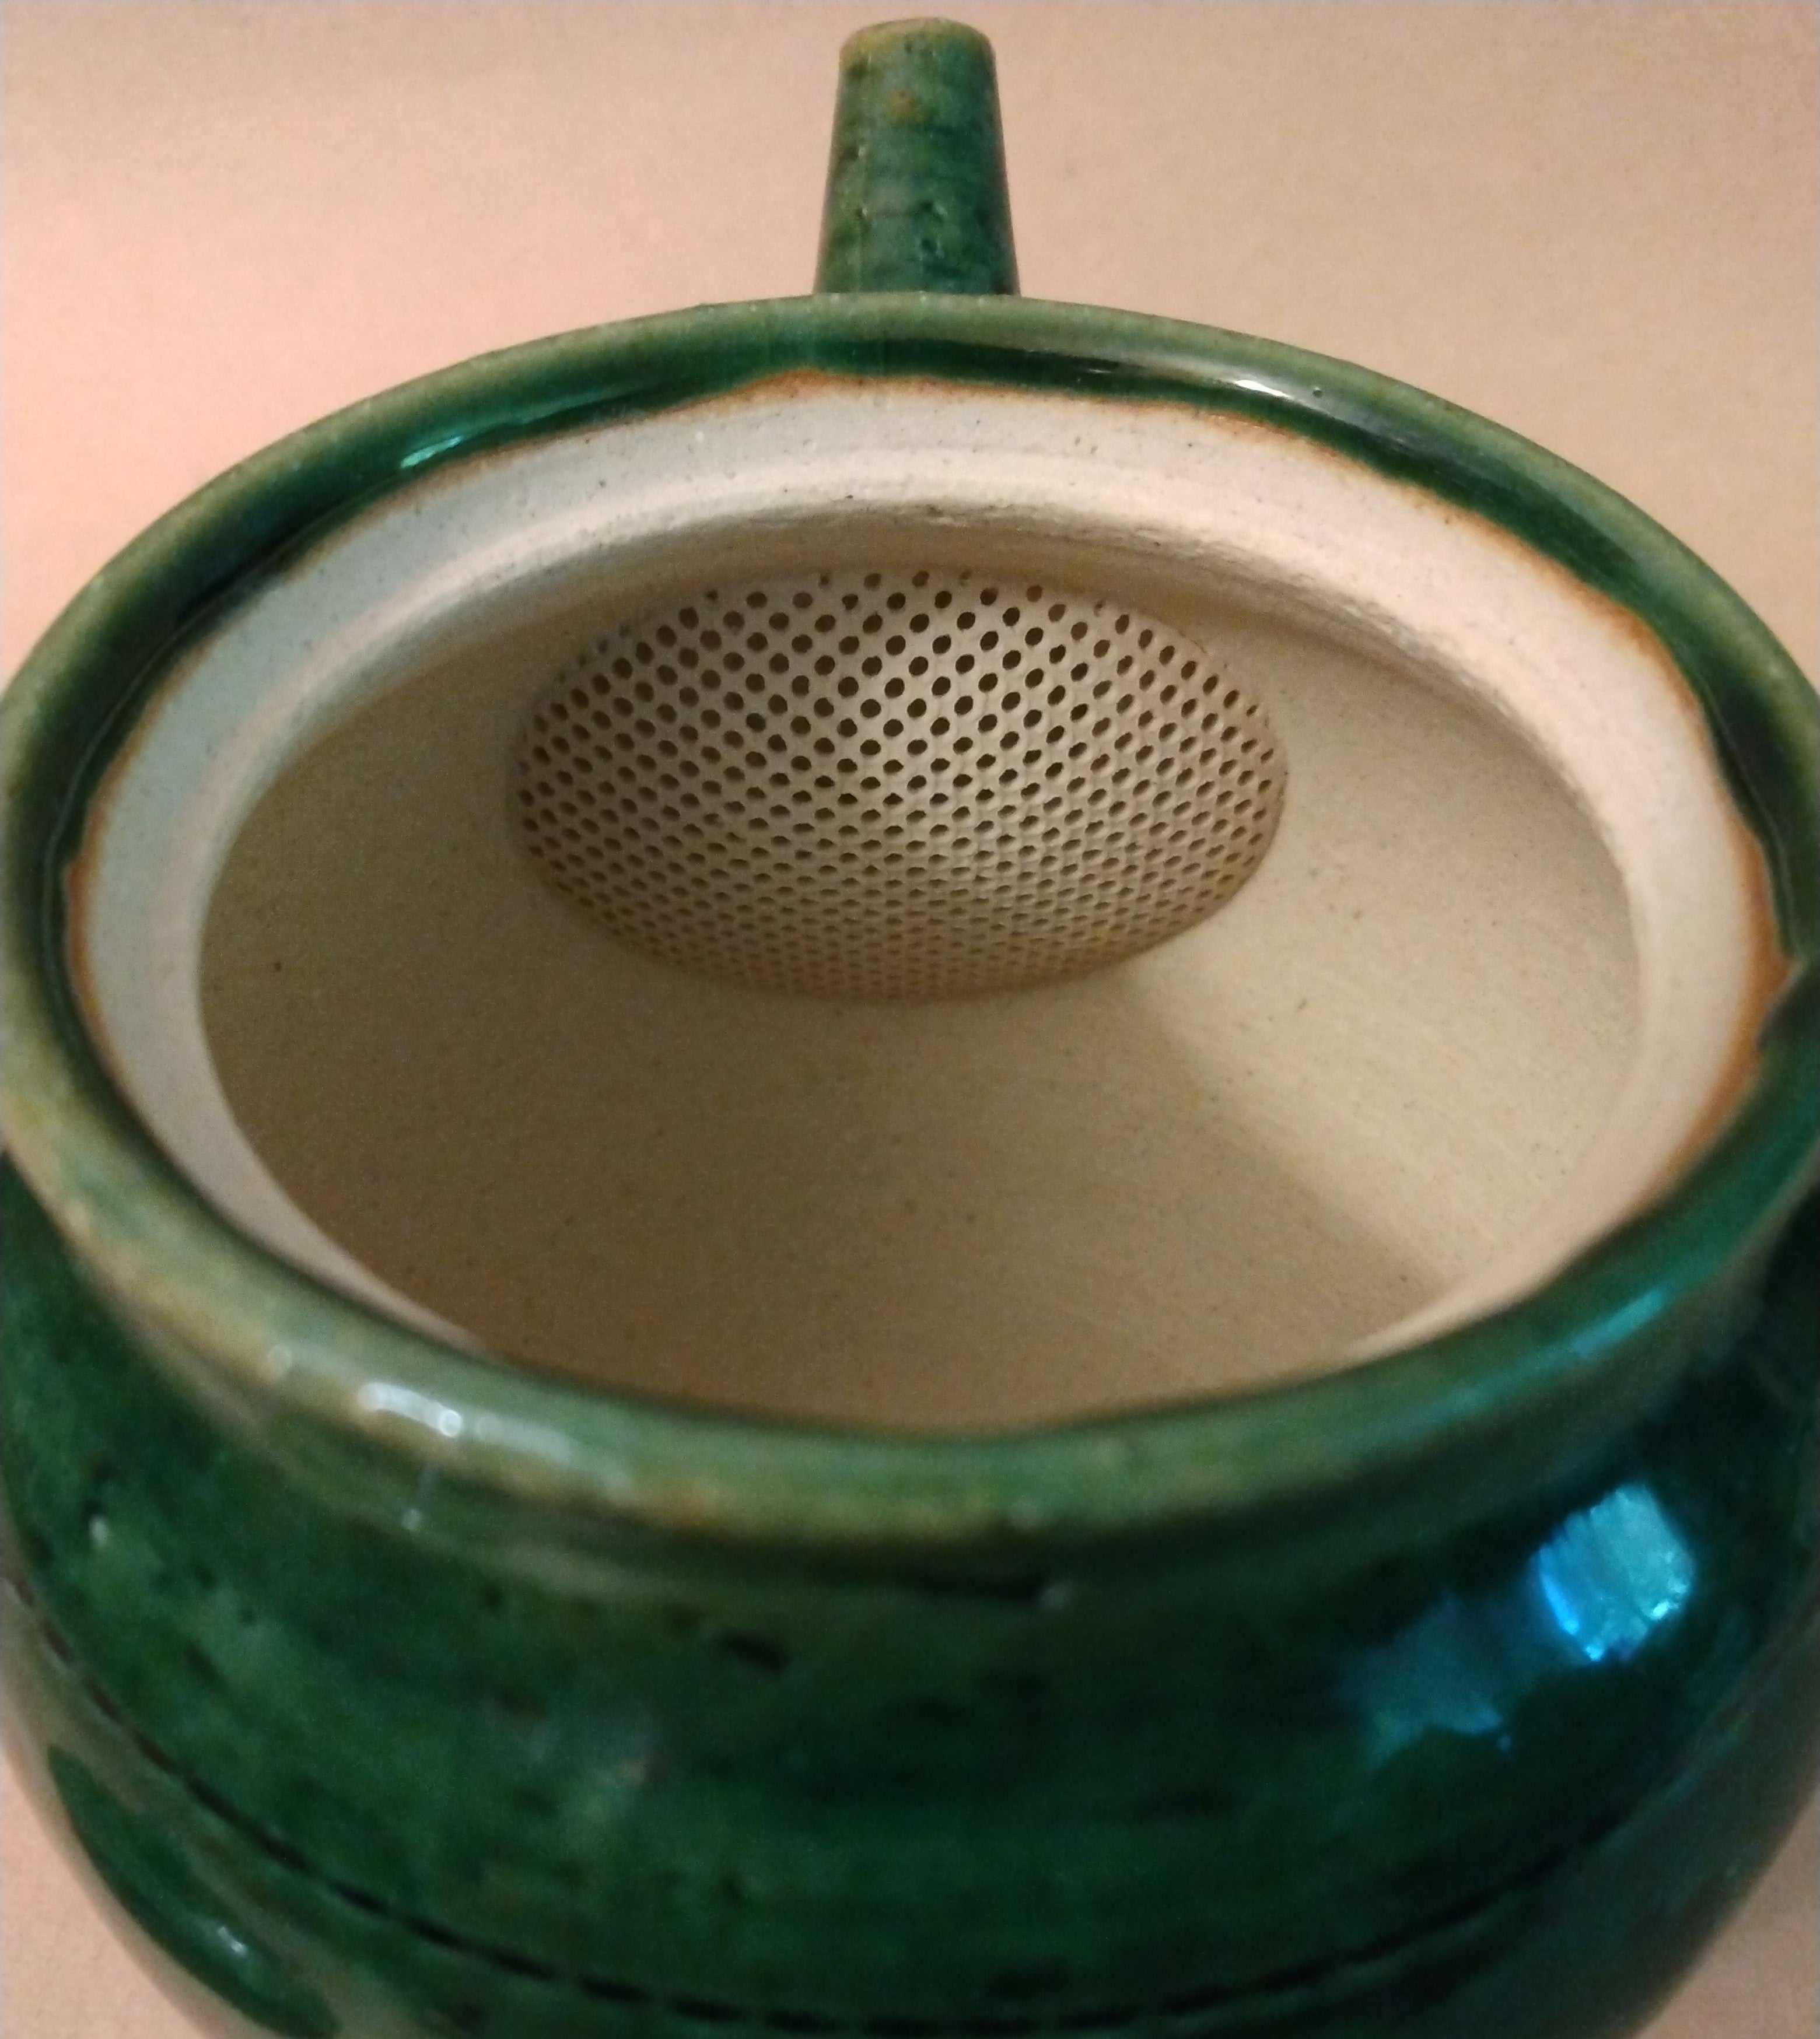 Tokoname Kyusu with Emerald Green (Copper) Glaze, 260cc (8.8z) by Jyunzou Kiln